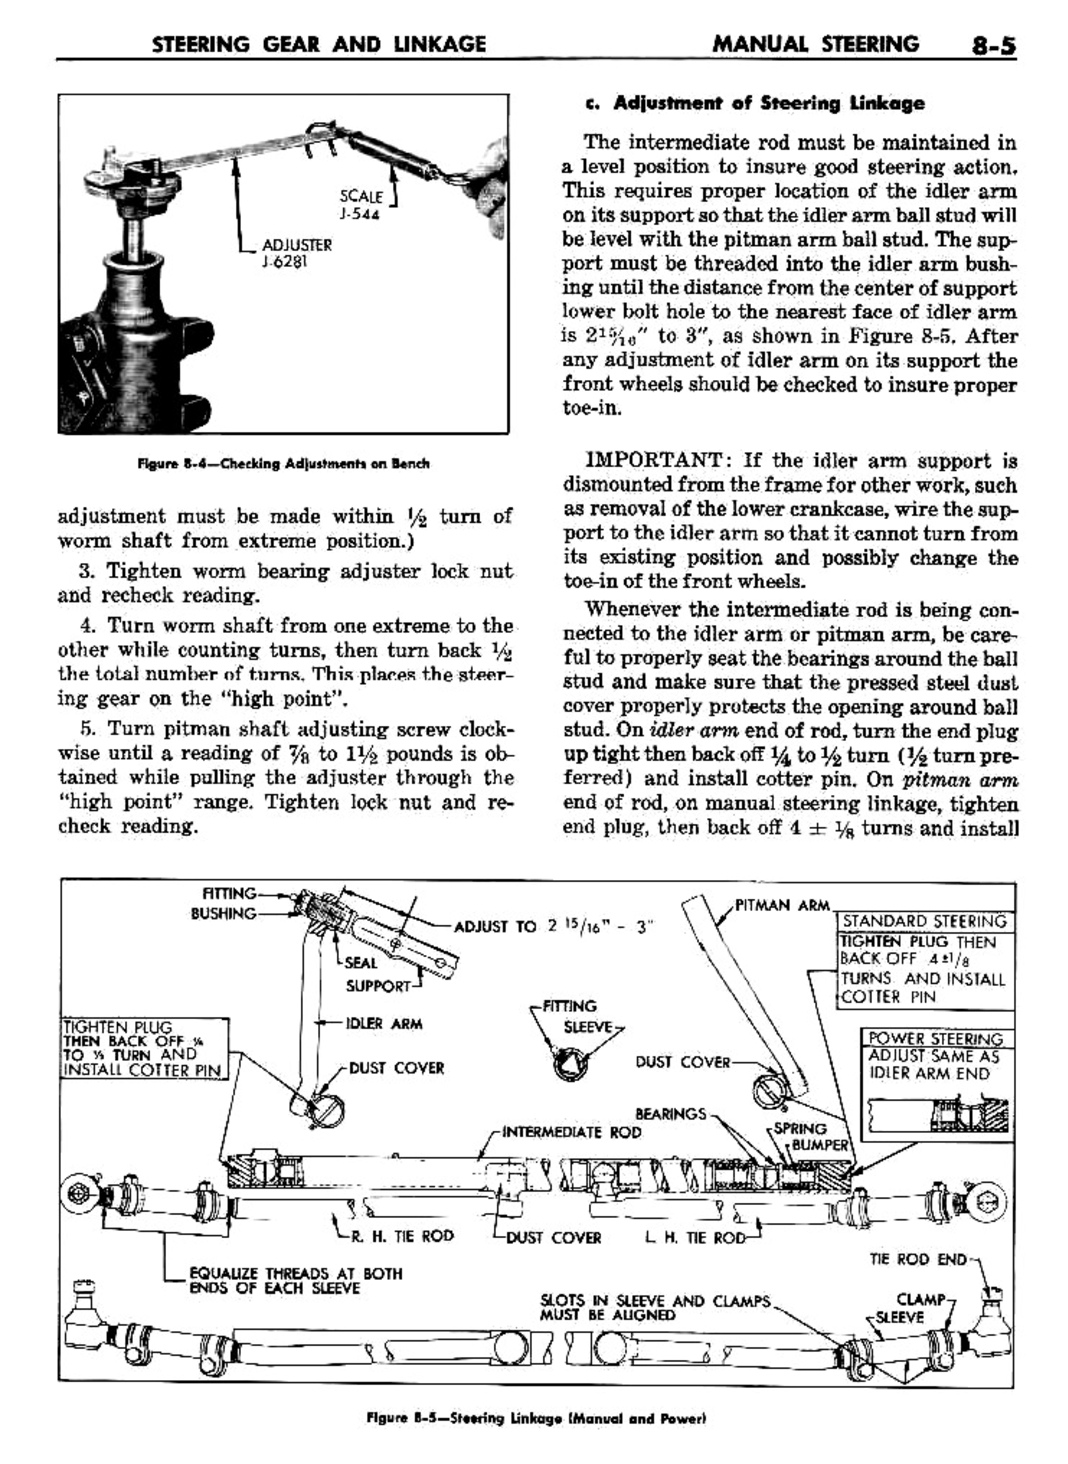 n_09 1960 Buick Shop Manual - Steering-005-005.jpg